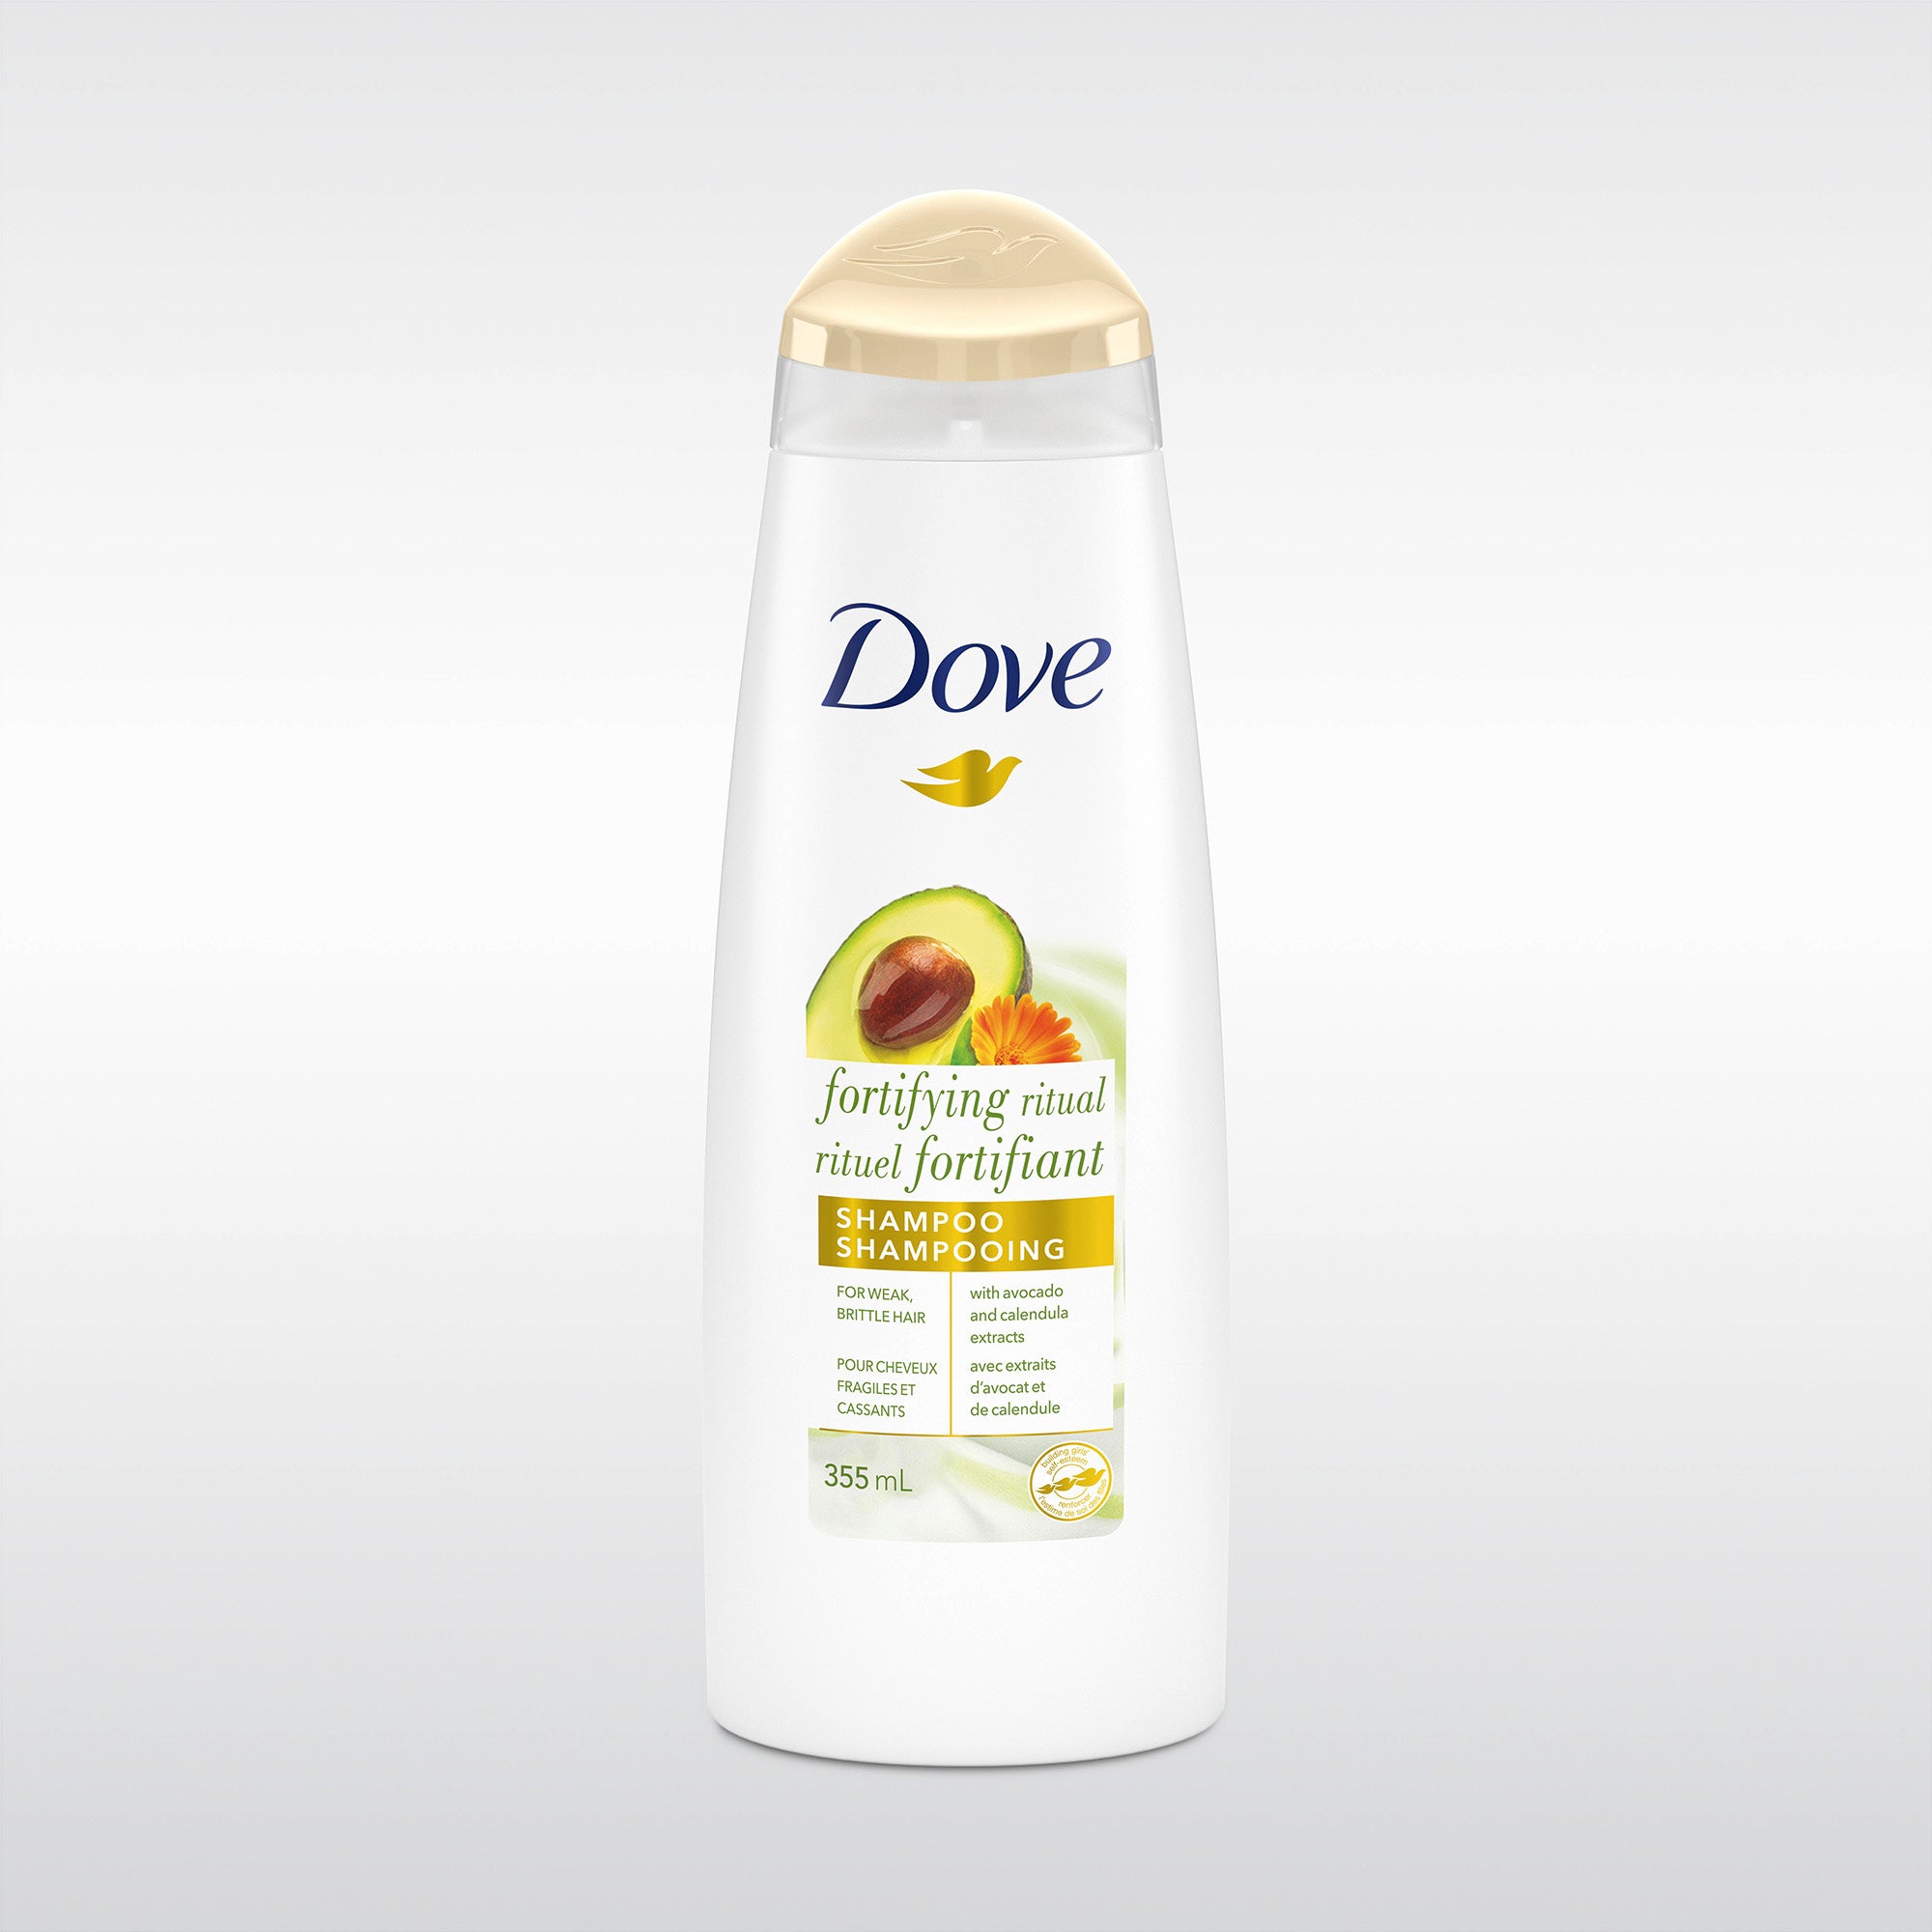 Dove fortifying ritual shampoo